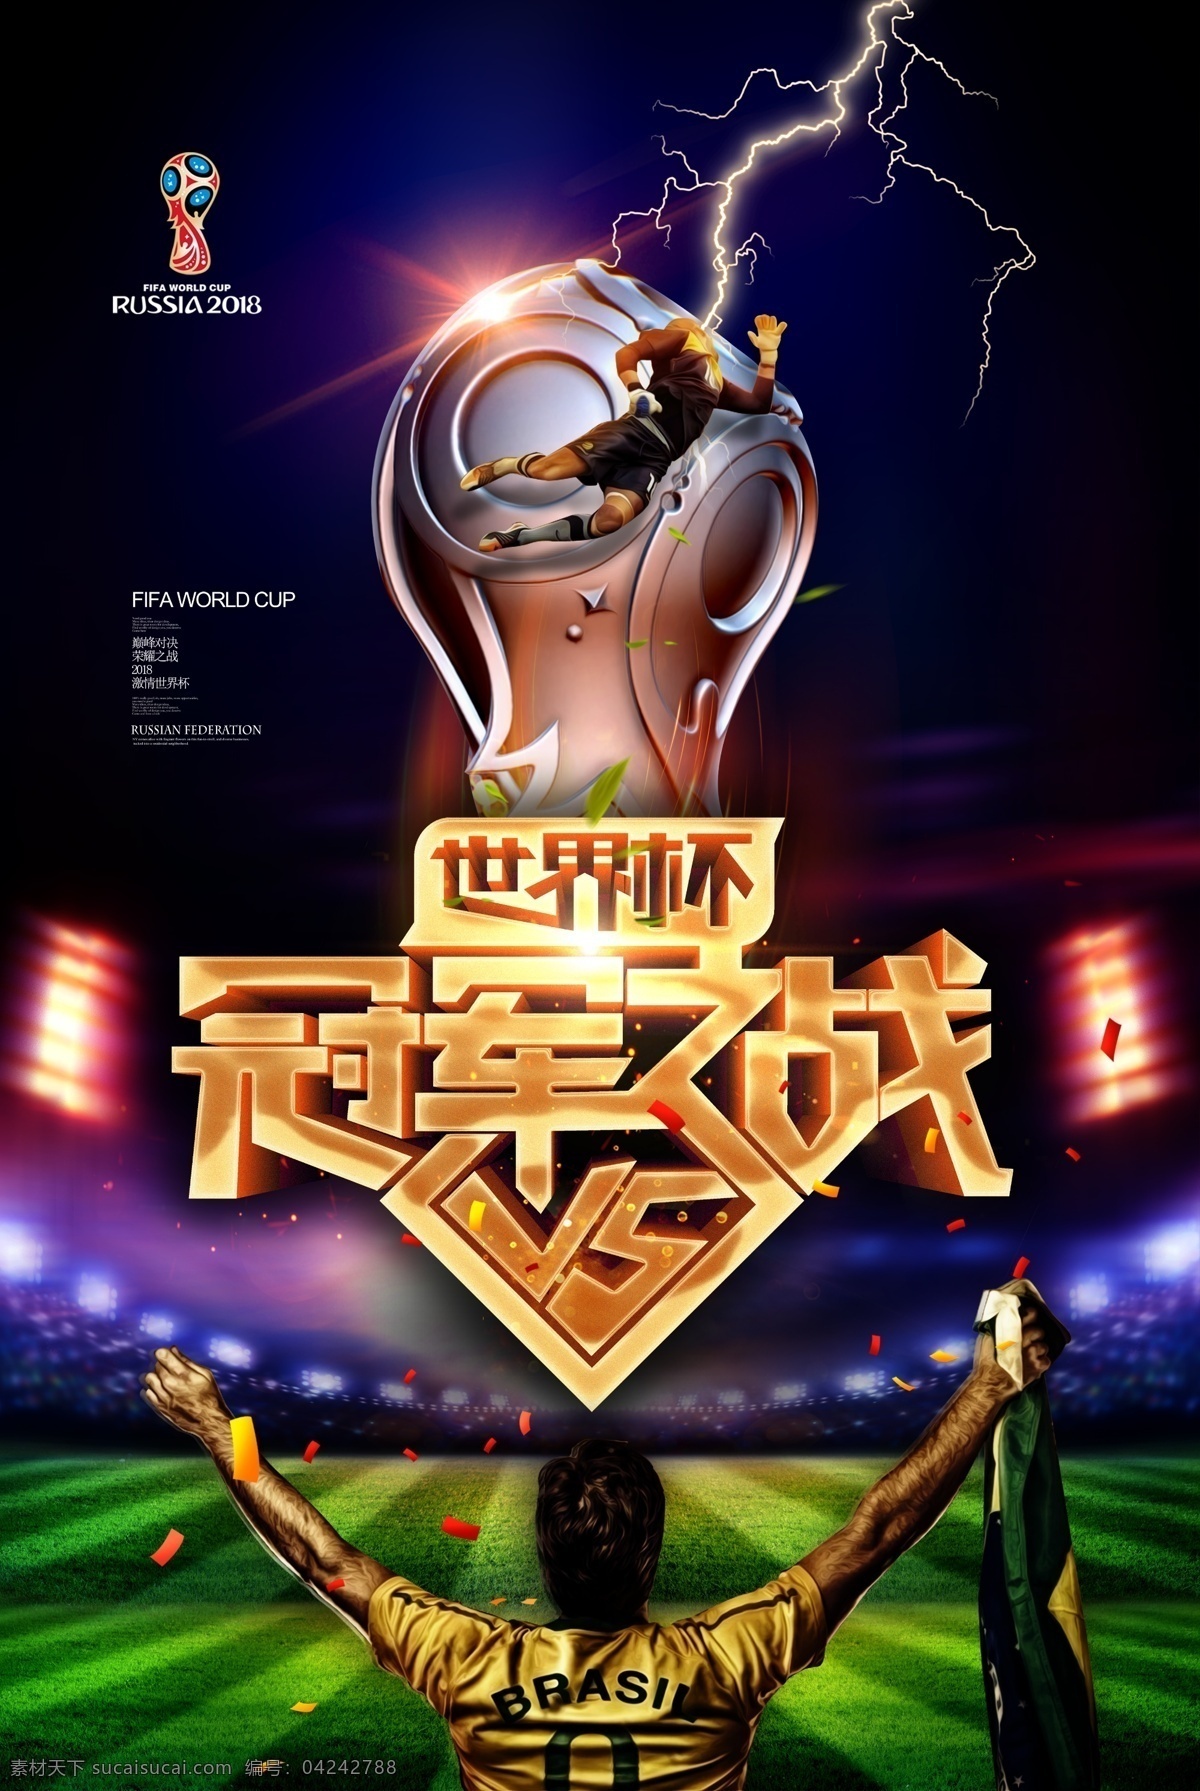 2018 俄罗斯 世界杯 决赛 海报 免费 足球 世界杯海报 免费模板 免费海报 赛事海报 体育海报 足球杯 俄罗斯世界杯 足球杯活动 赛事